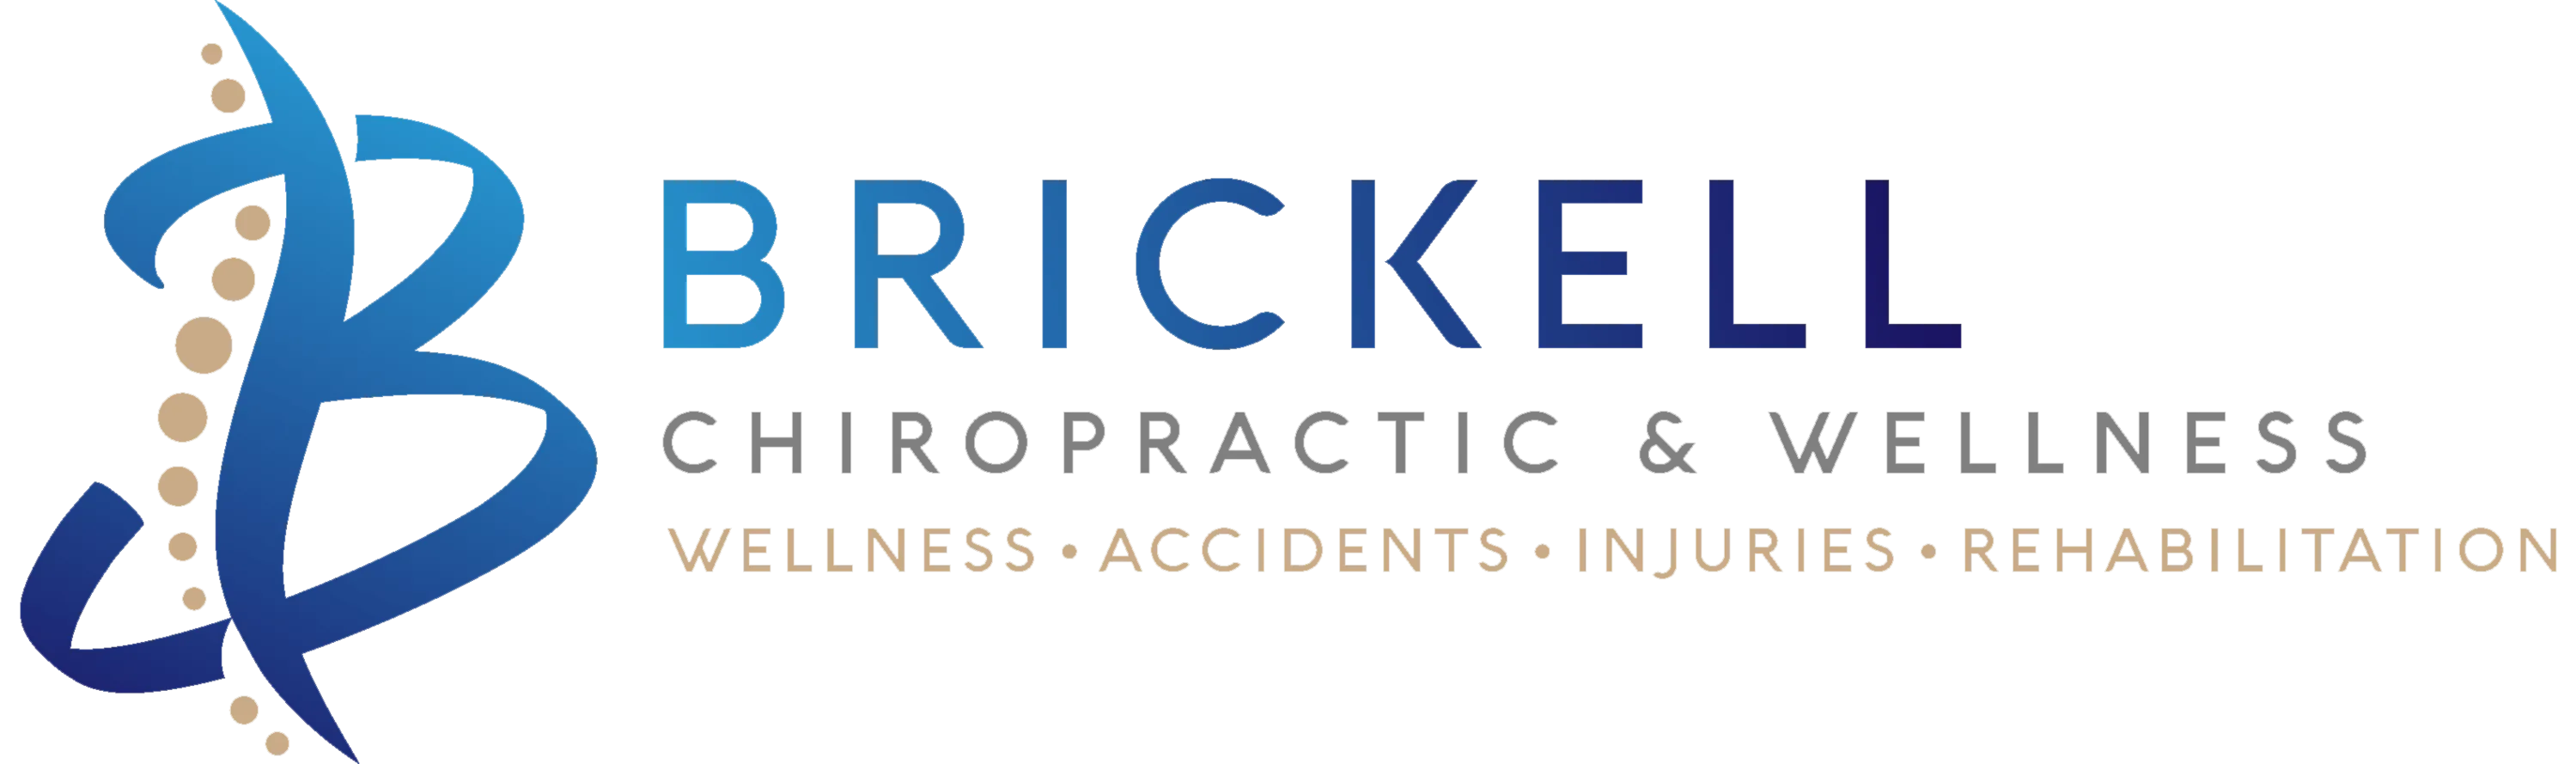 Brickell Chiropractic & Wellness